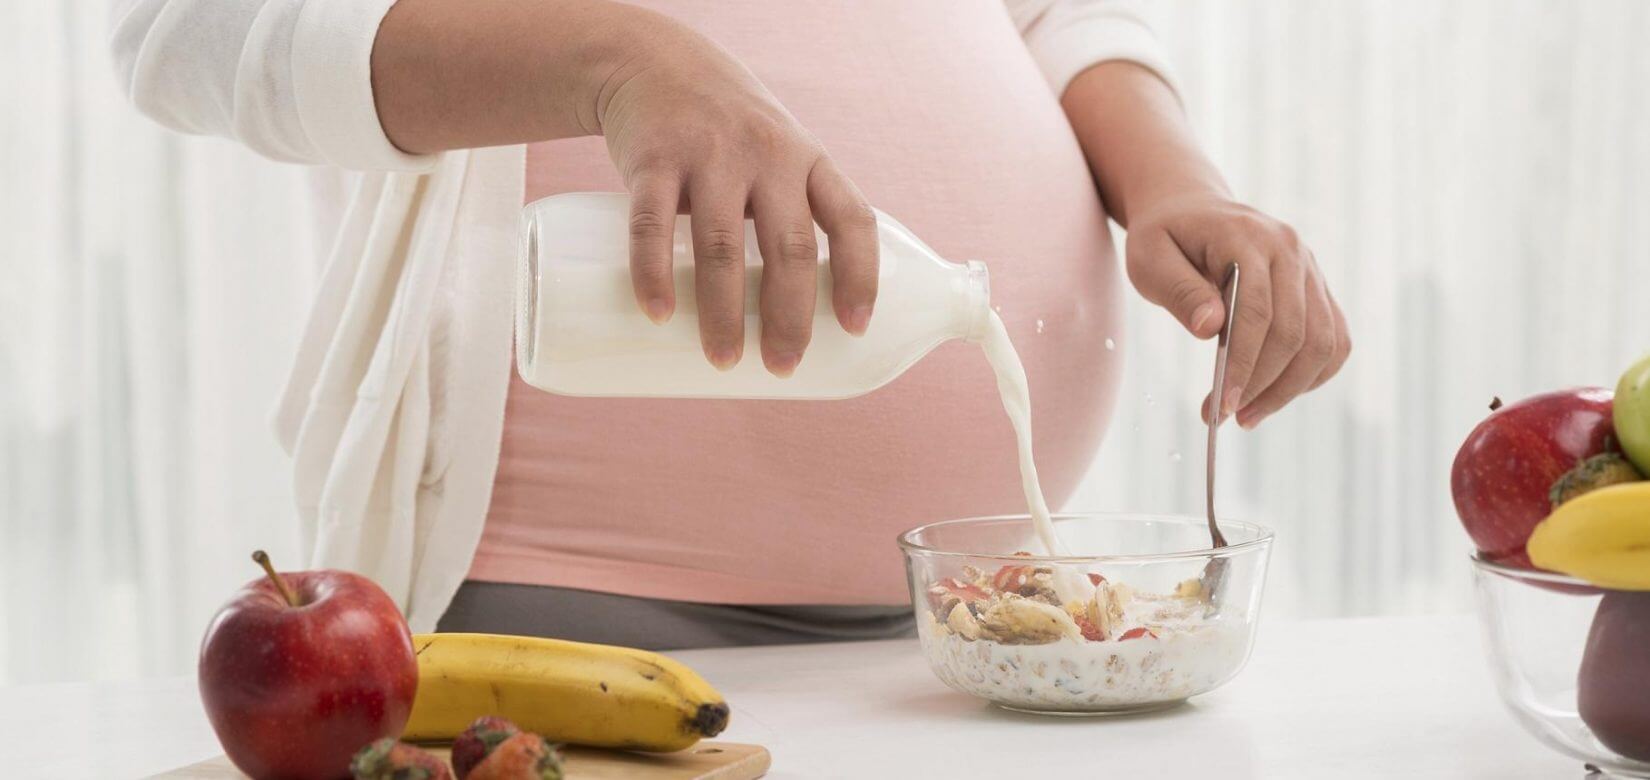 Η διατροφή κατά τη διάρκεια της εγκυμοσύνης κάνει τα παιδιά πιο έξυπνα και κοινωνικά